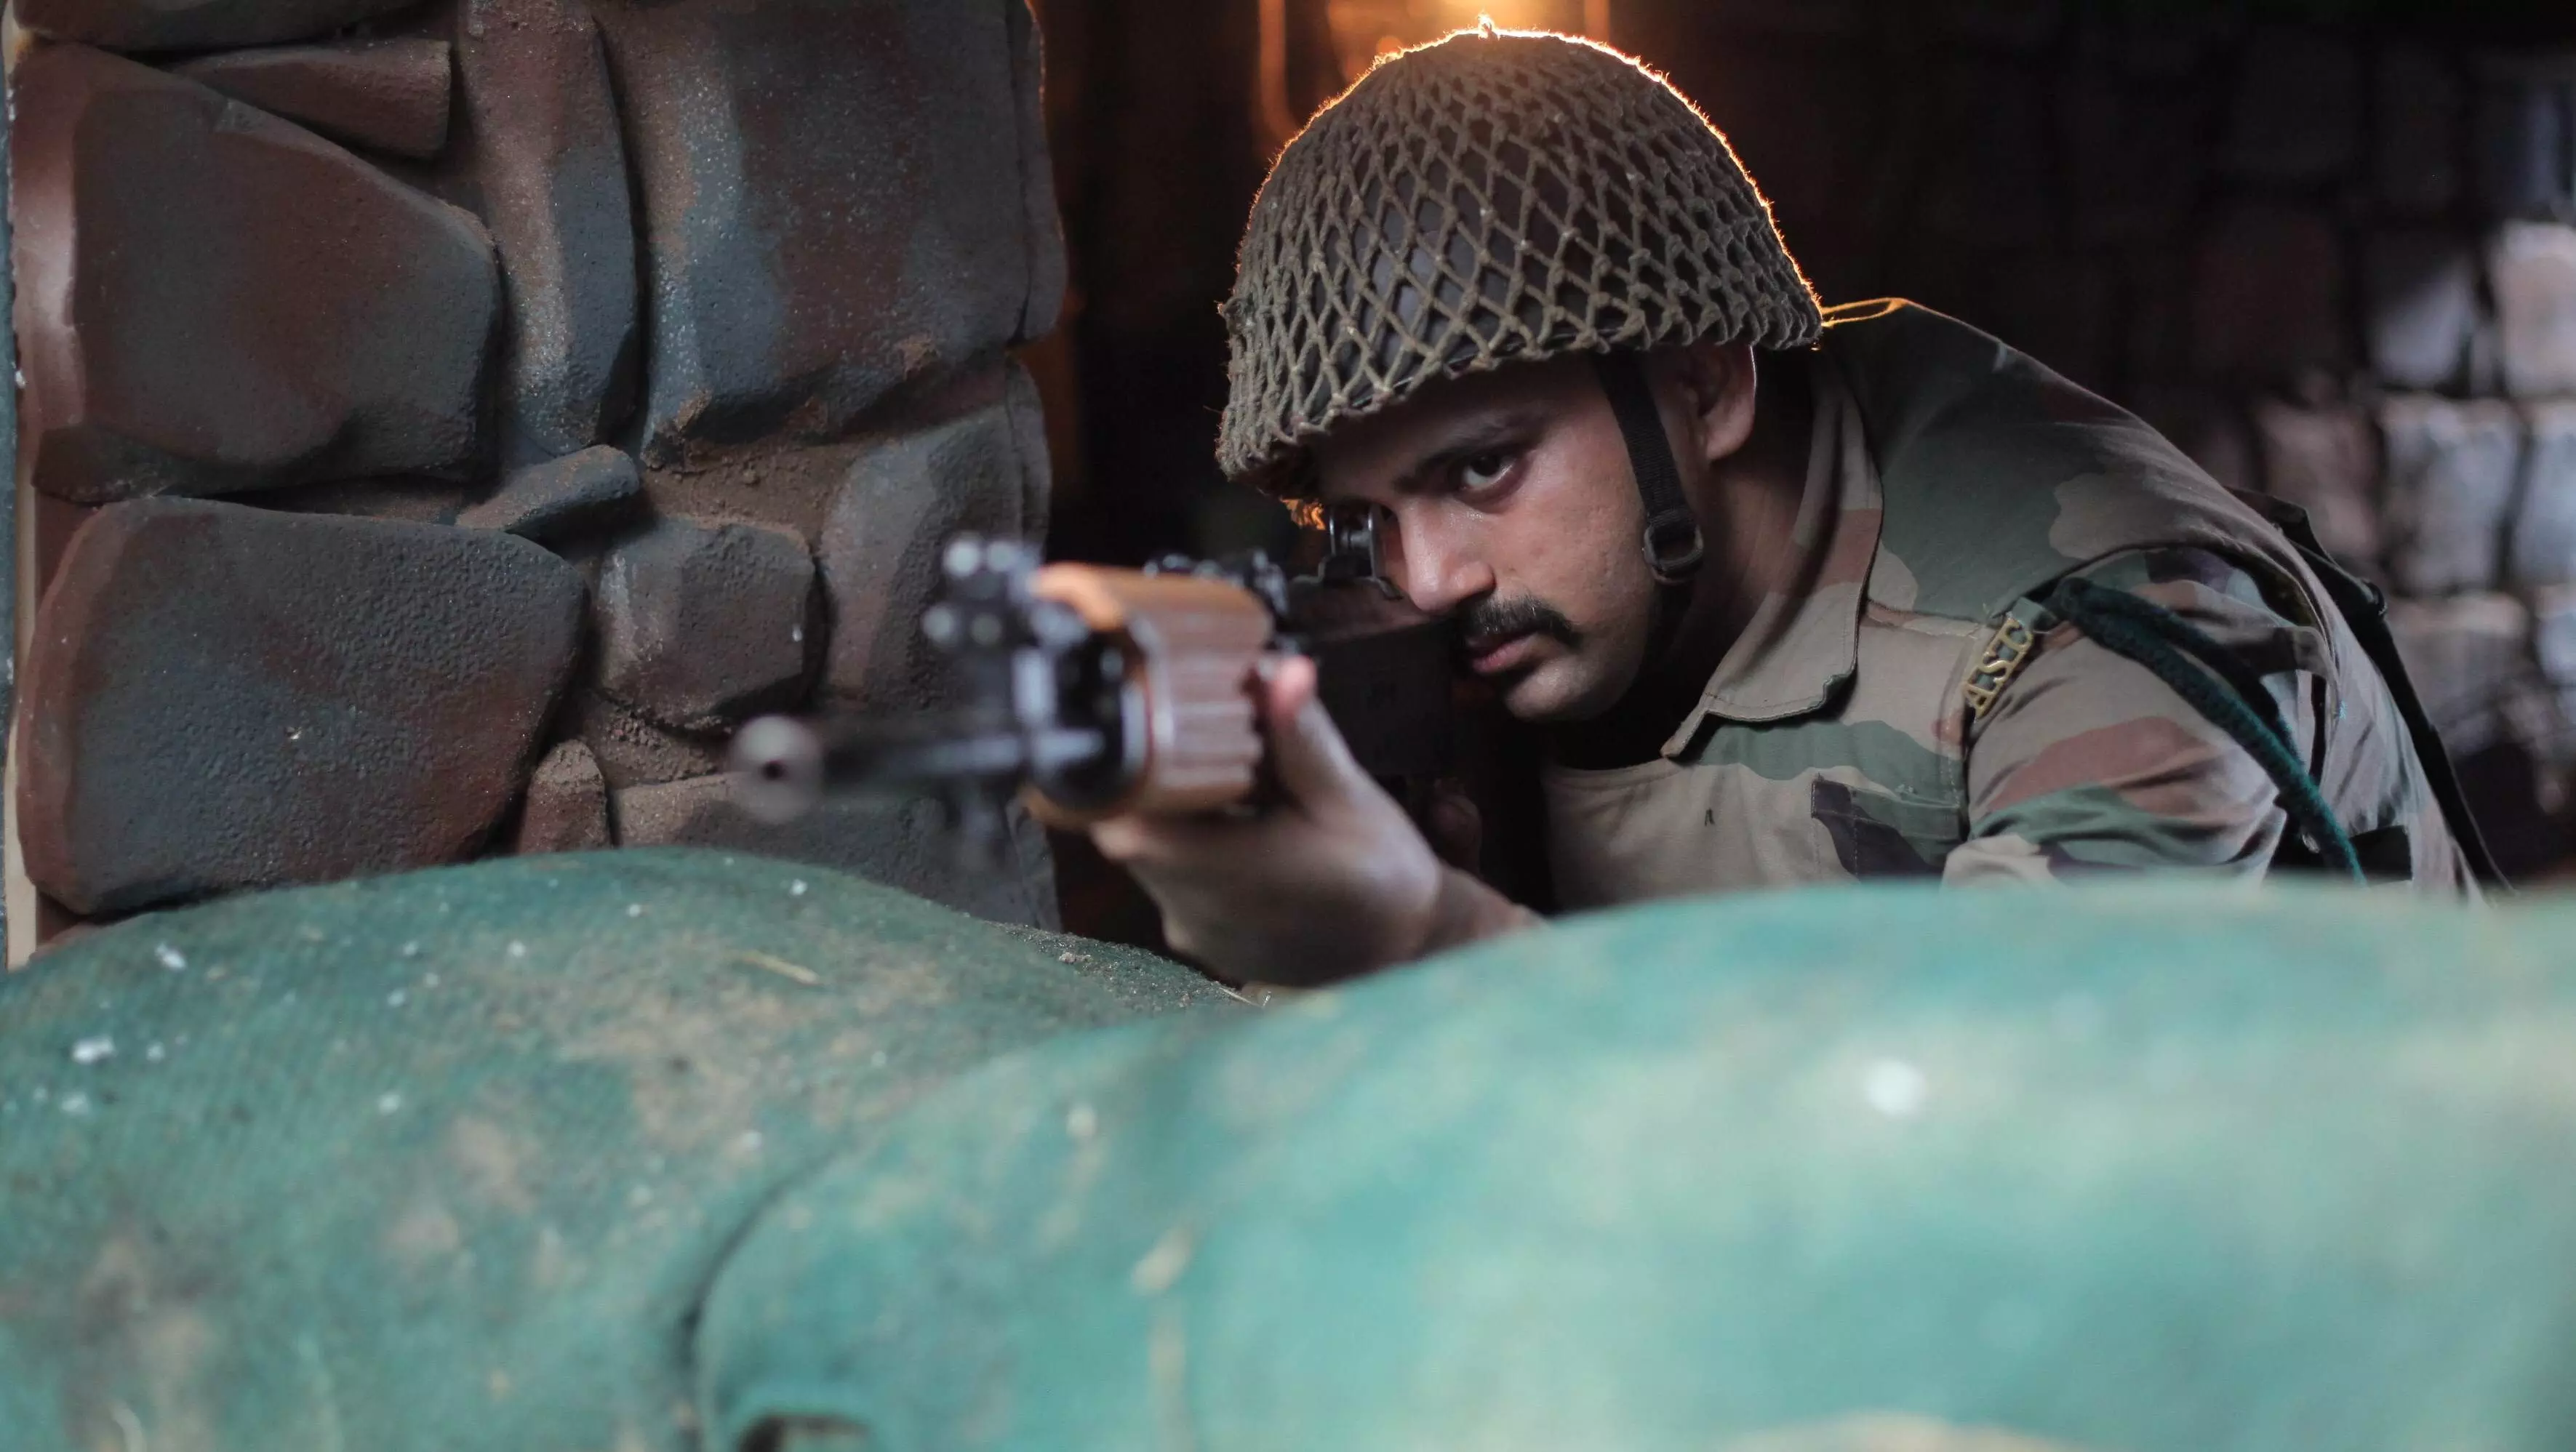 सैनिकों की मानसिक स्थिति के लिए समर्पित है फिल्म बंकर